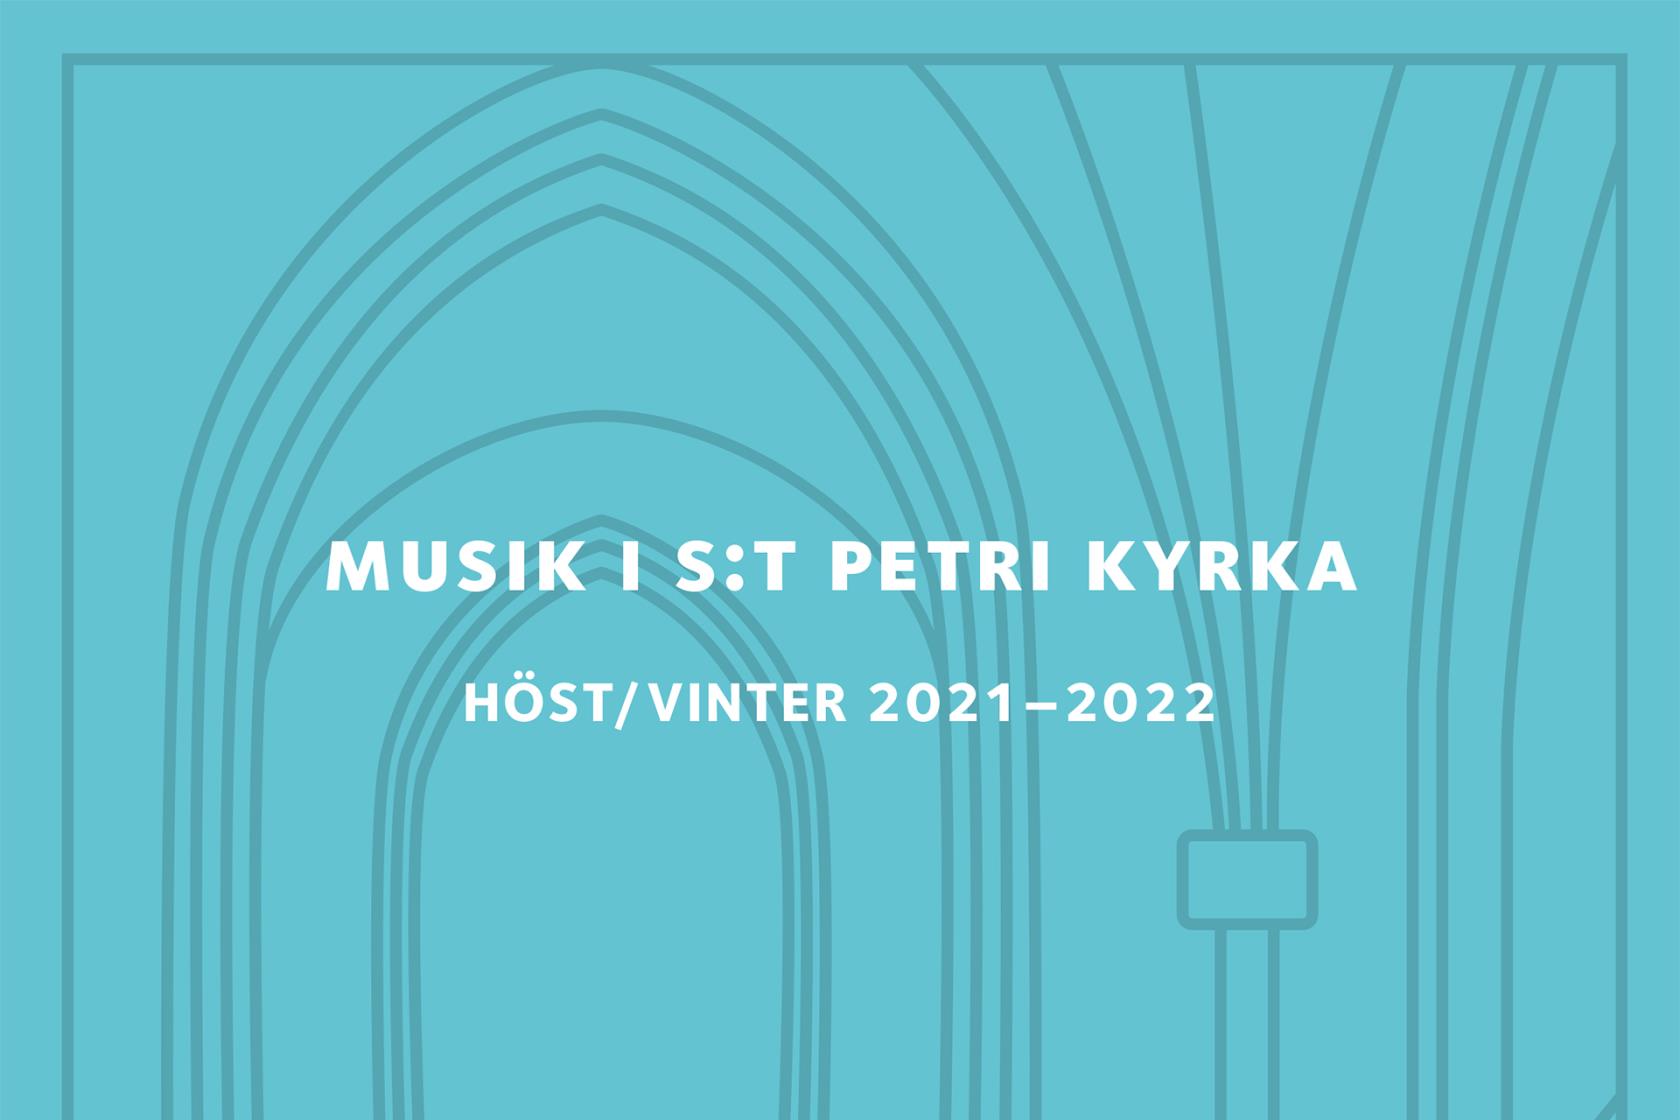 Stiliserad bild av St Petri kyrkas valv på mellanblå färg och text.